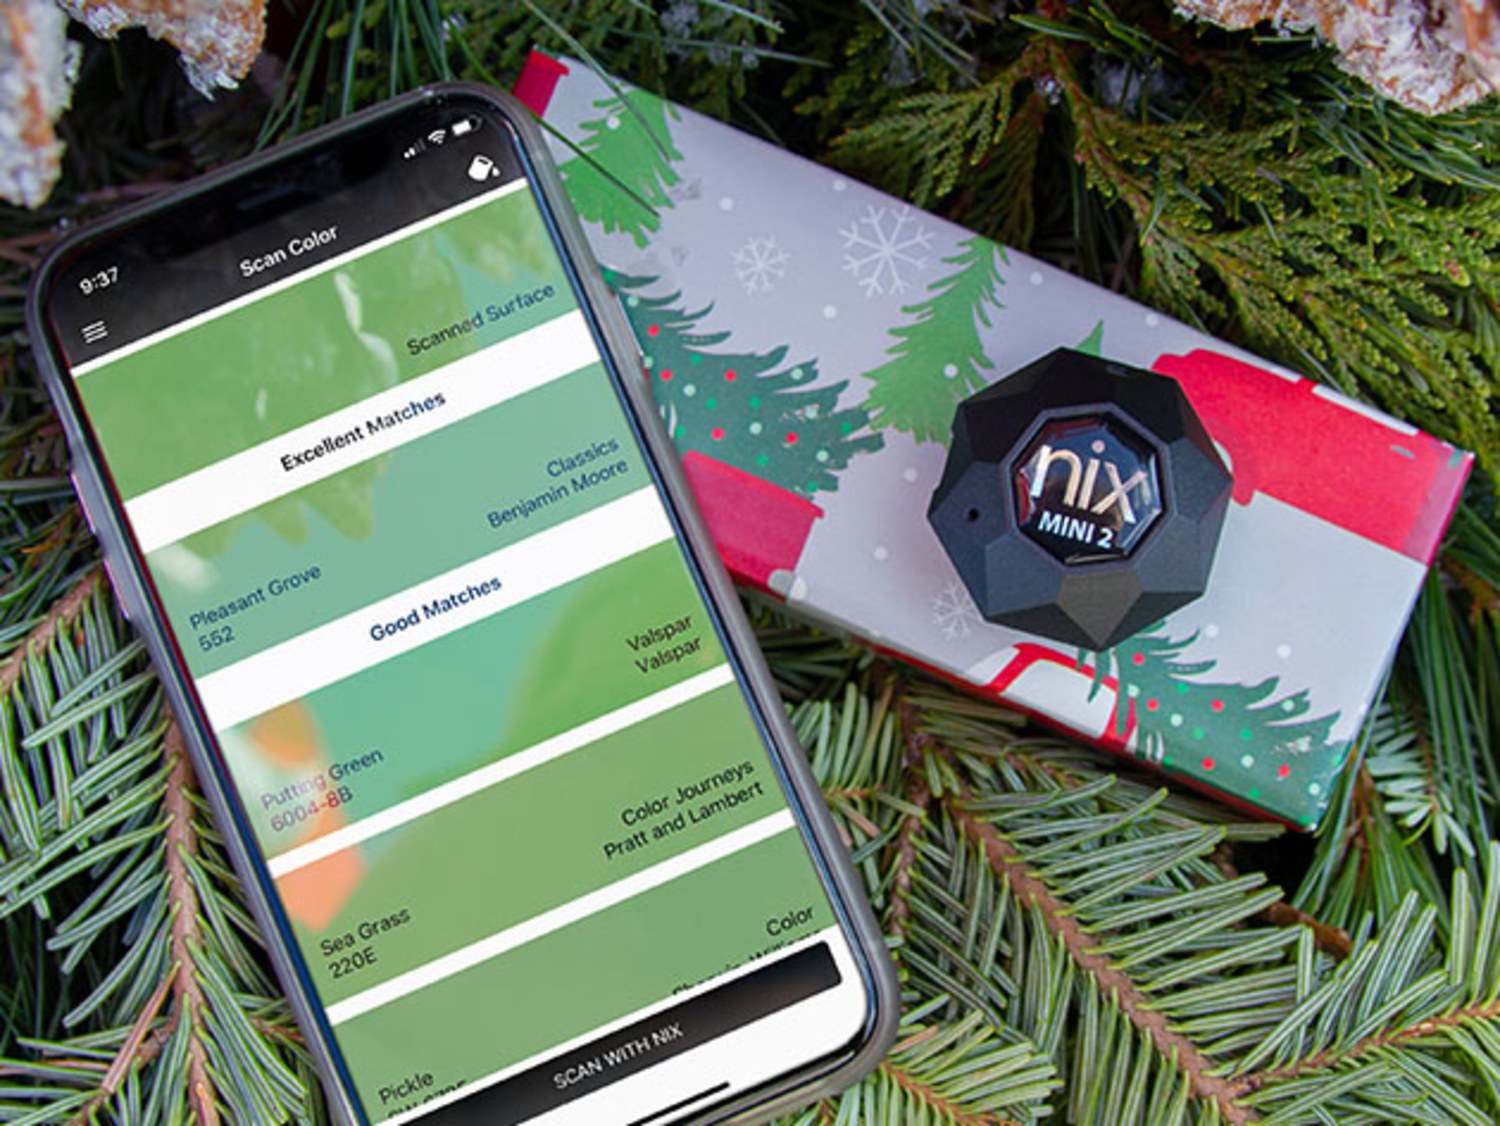 Nix Sensor - Color Matching Tool, Paint Color Sensor App